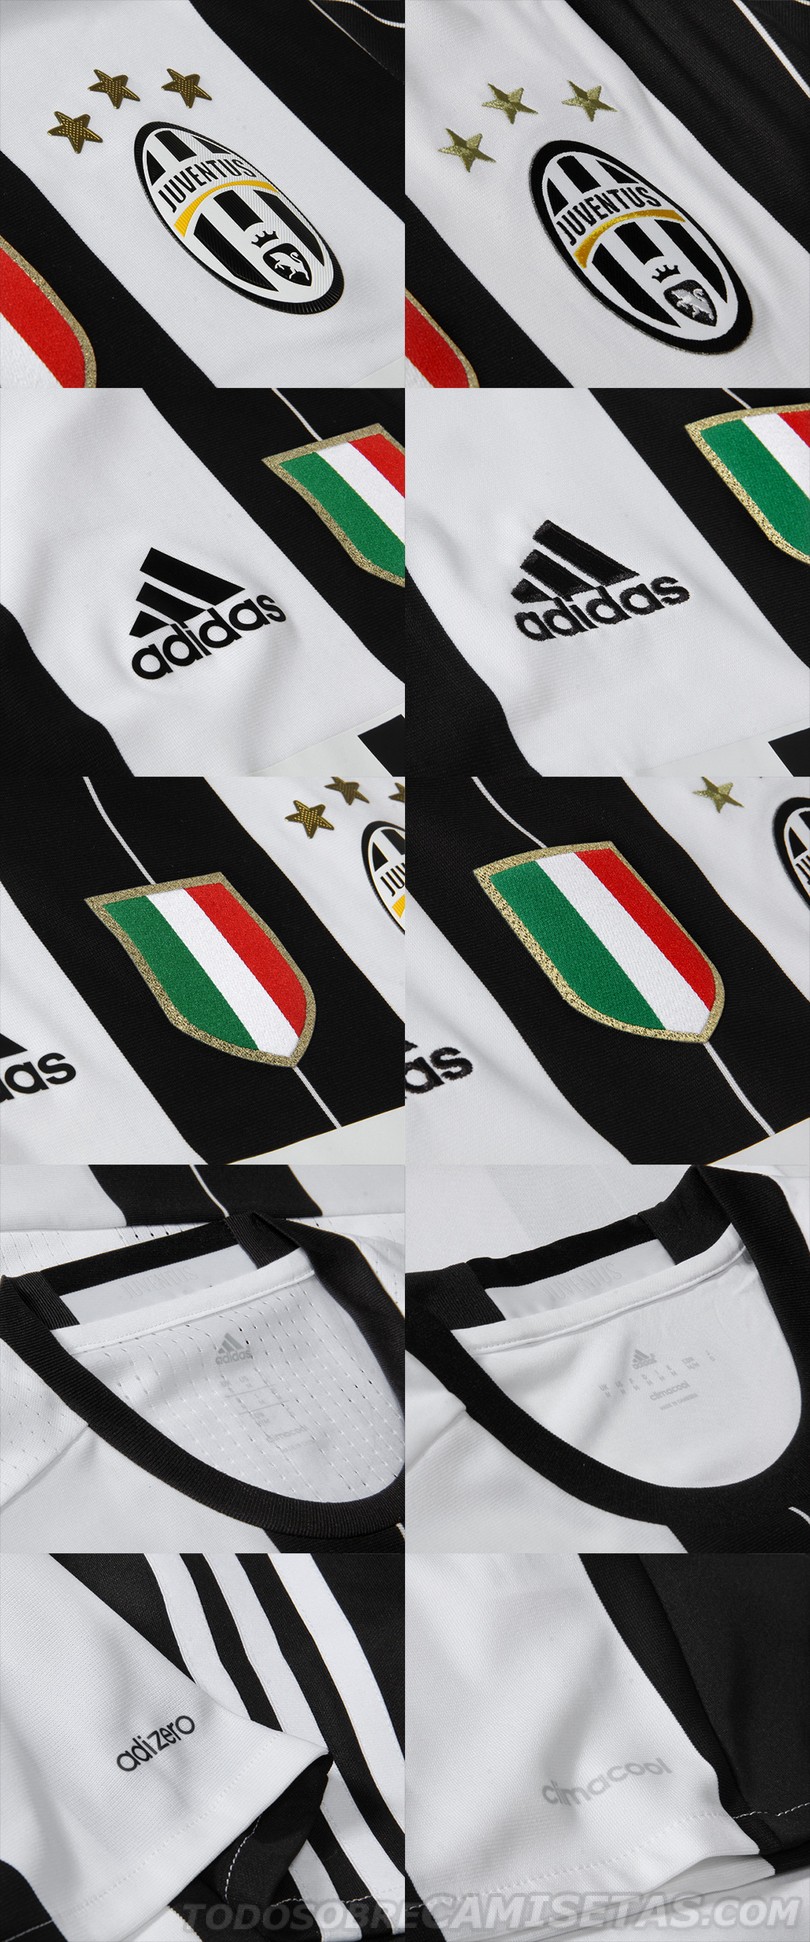 Juventus 2016-17 home kit by adidas